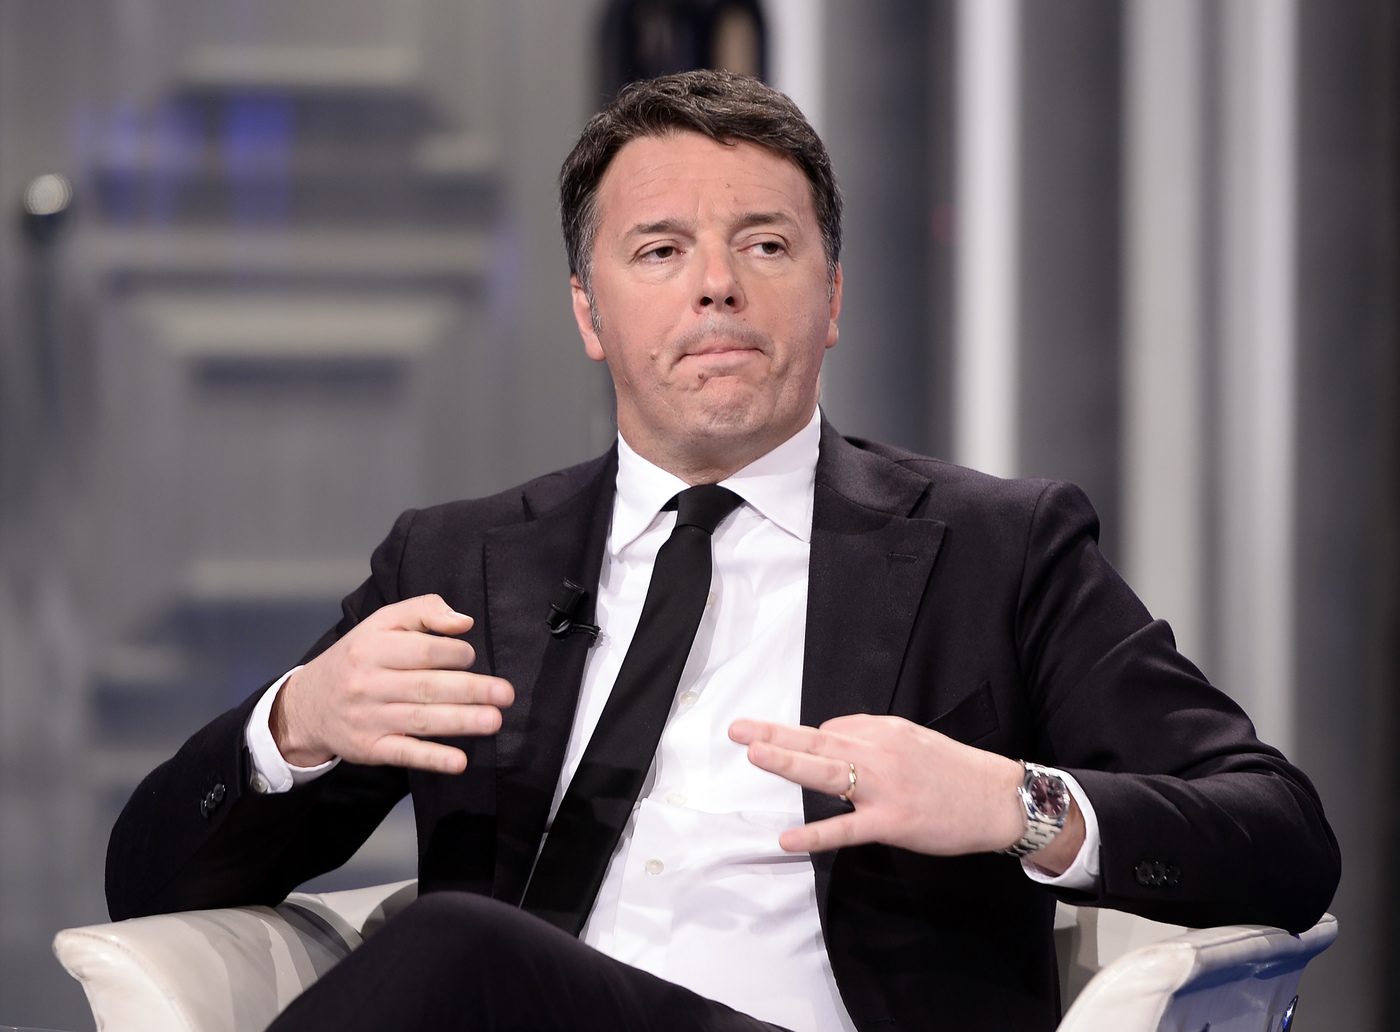 Governo, Renzi: "Un Draghi bis? Basta così, nel 2023 si vada a elezioni e governi chi vince"